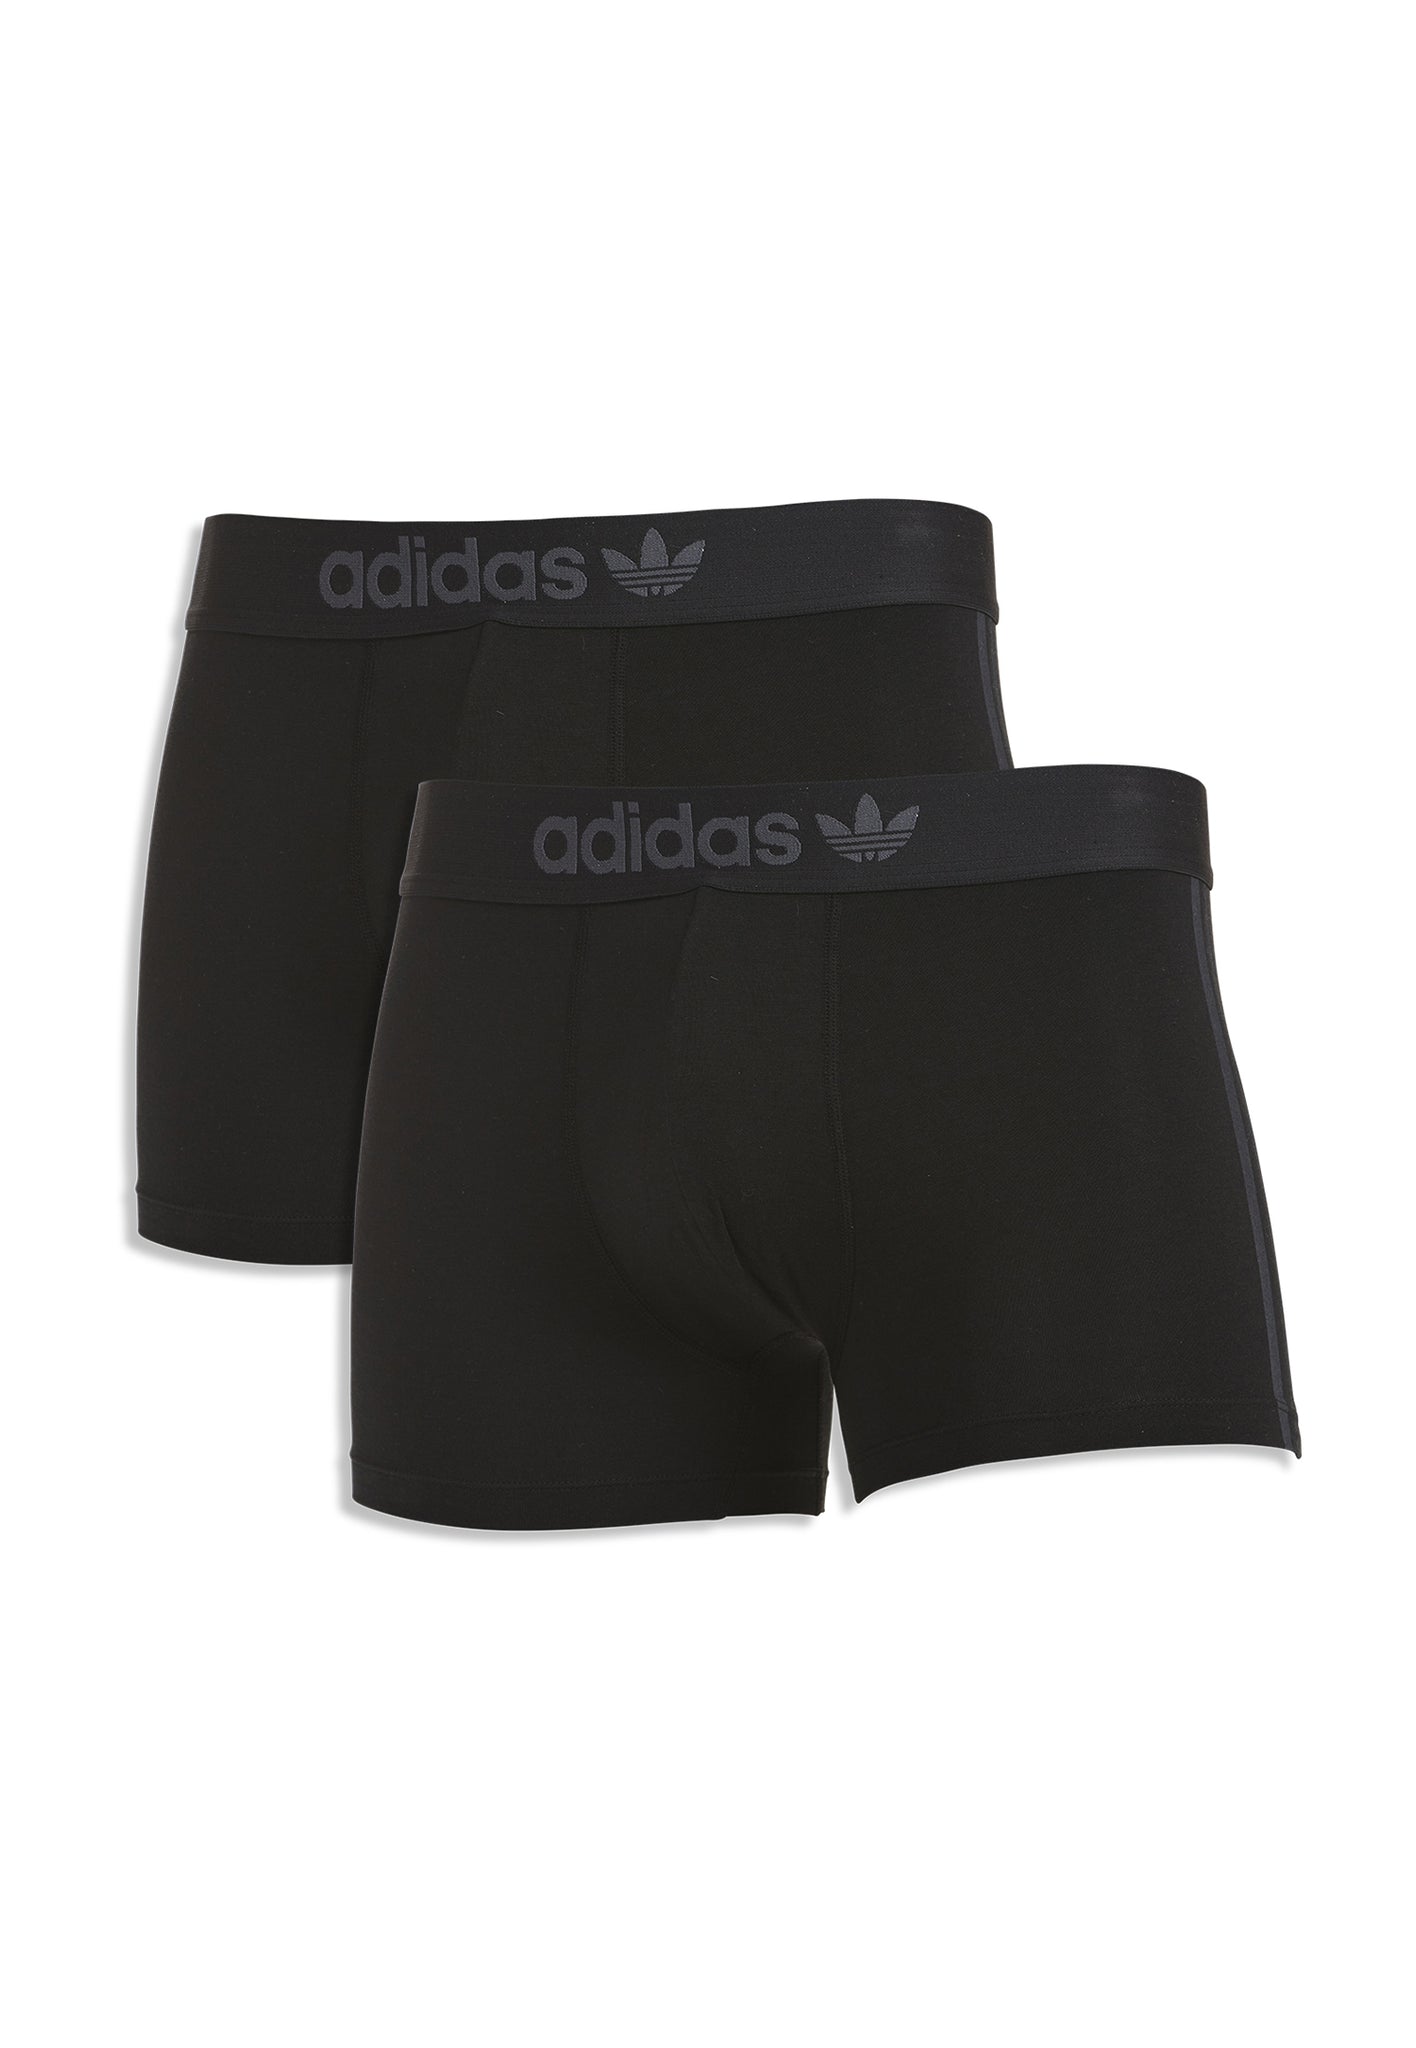 Accent-stripe solid briefs 3-pack, Adidas Originals, Shop Men's Underwear  Multi-Packs Online